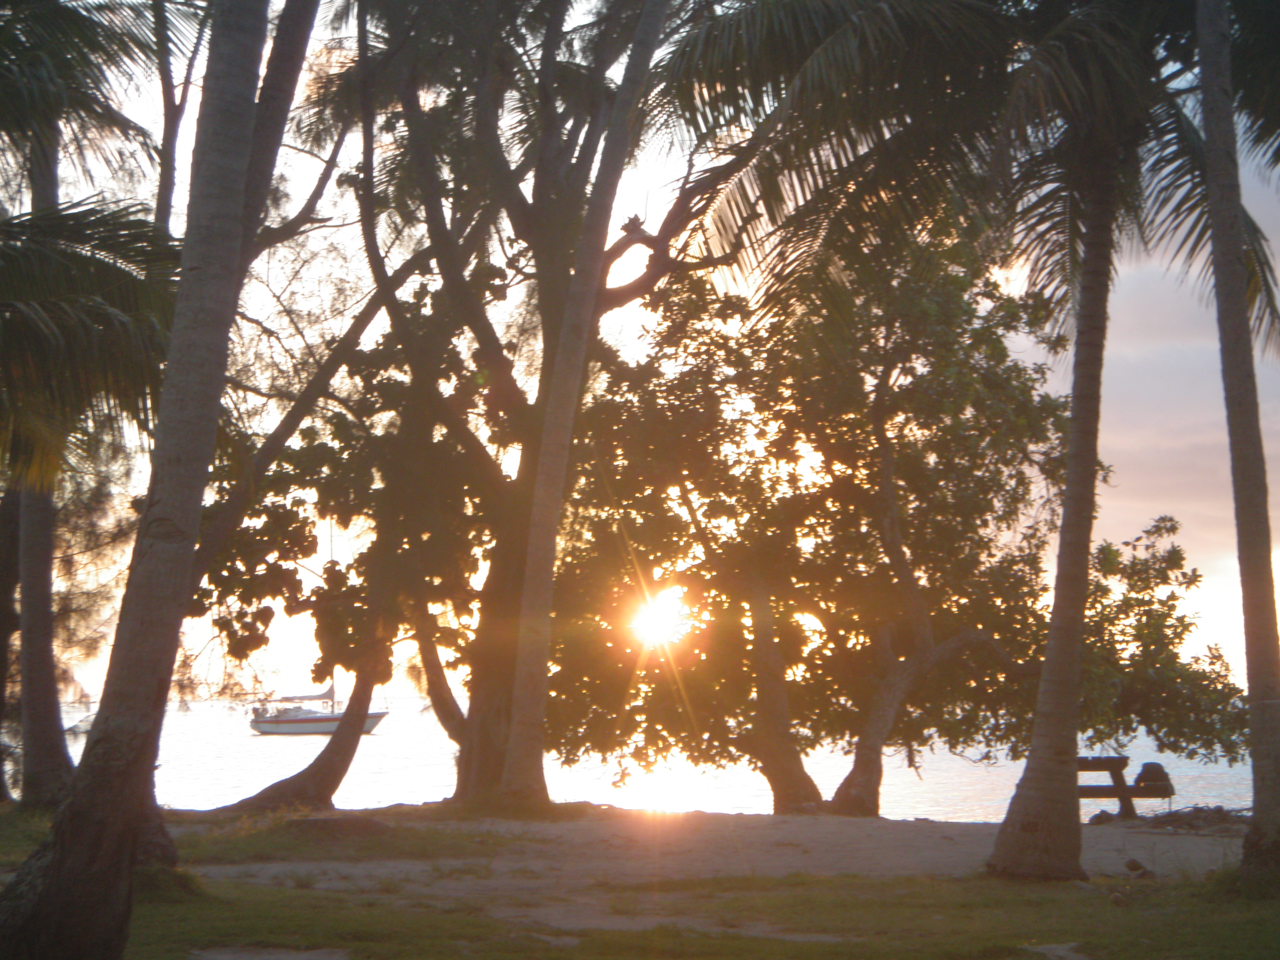 En bord de mer on voit le soleil à travers des arbres et des cocotiers